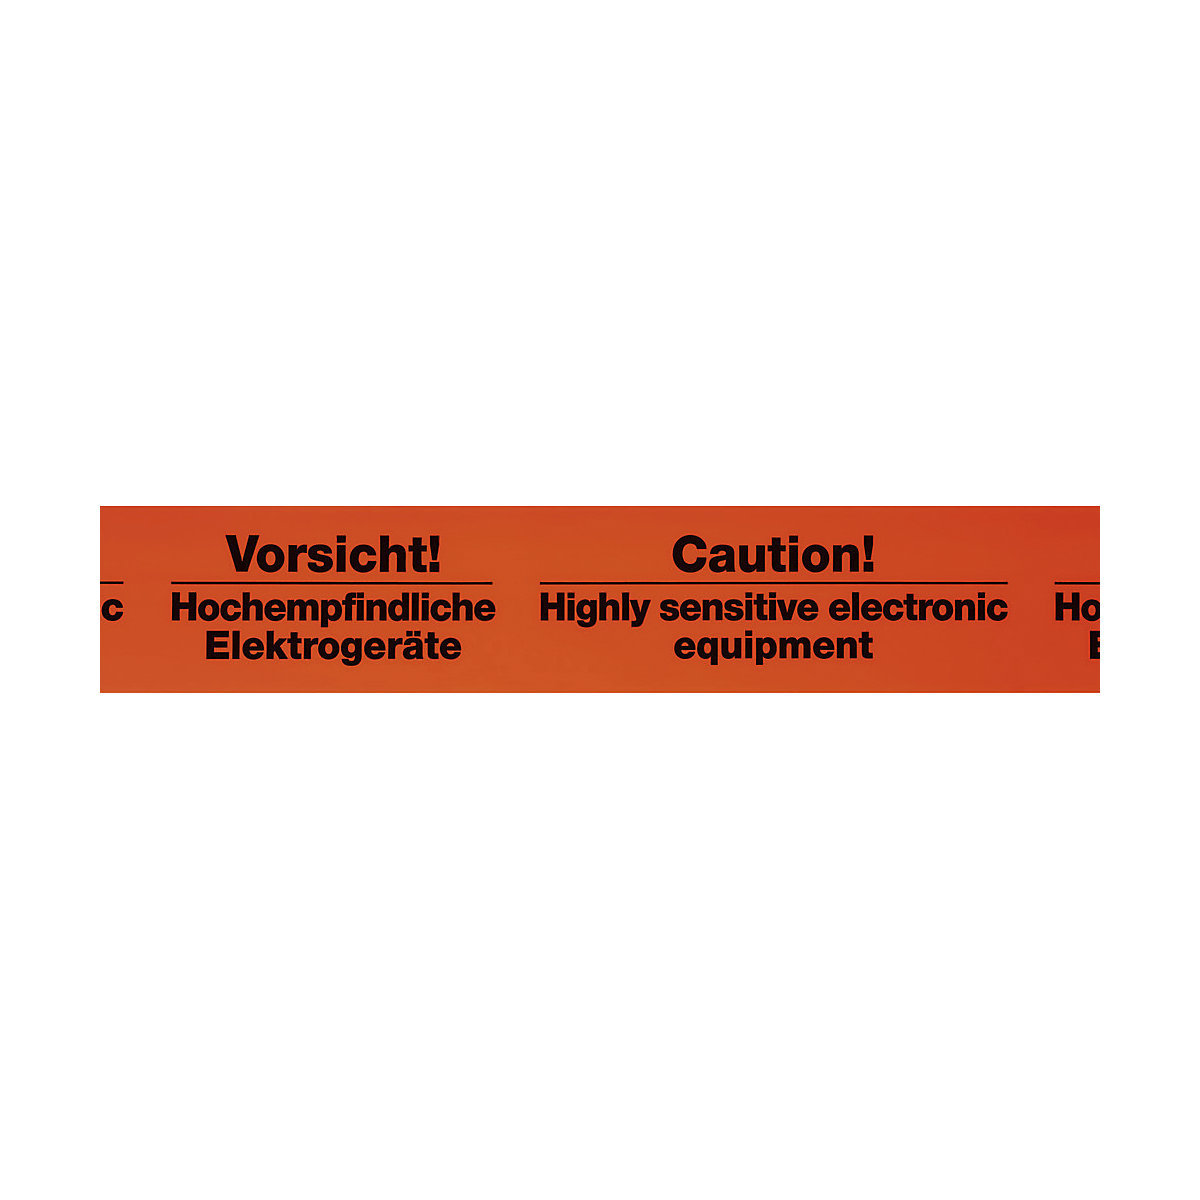 Warn-Klebeband, Aufdruck Vorsicht! Hochempfindliche Elektrogeräte, VE 3 Stk, Bandbreite 75 mm, ab 10 VE-1